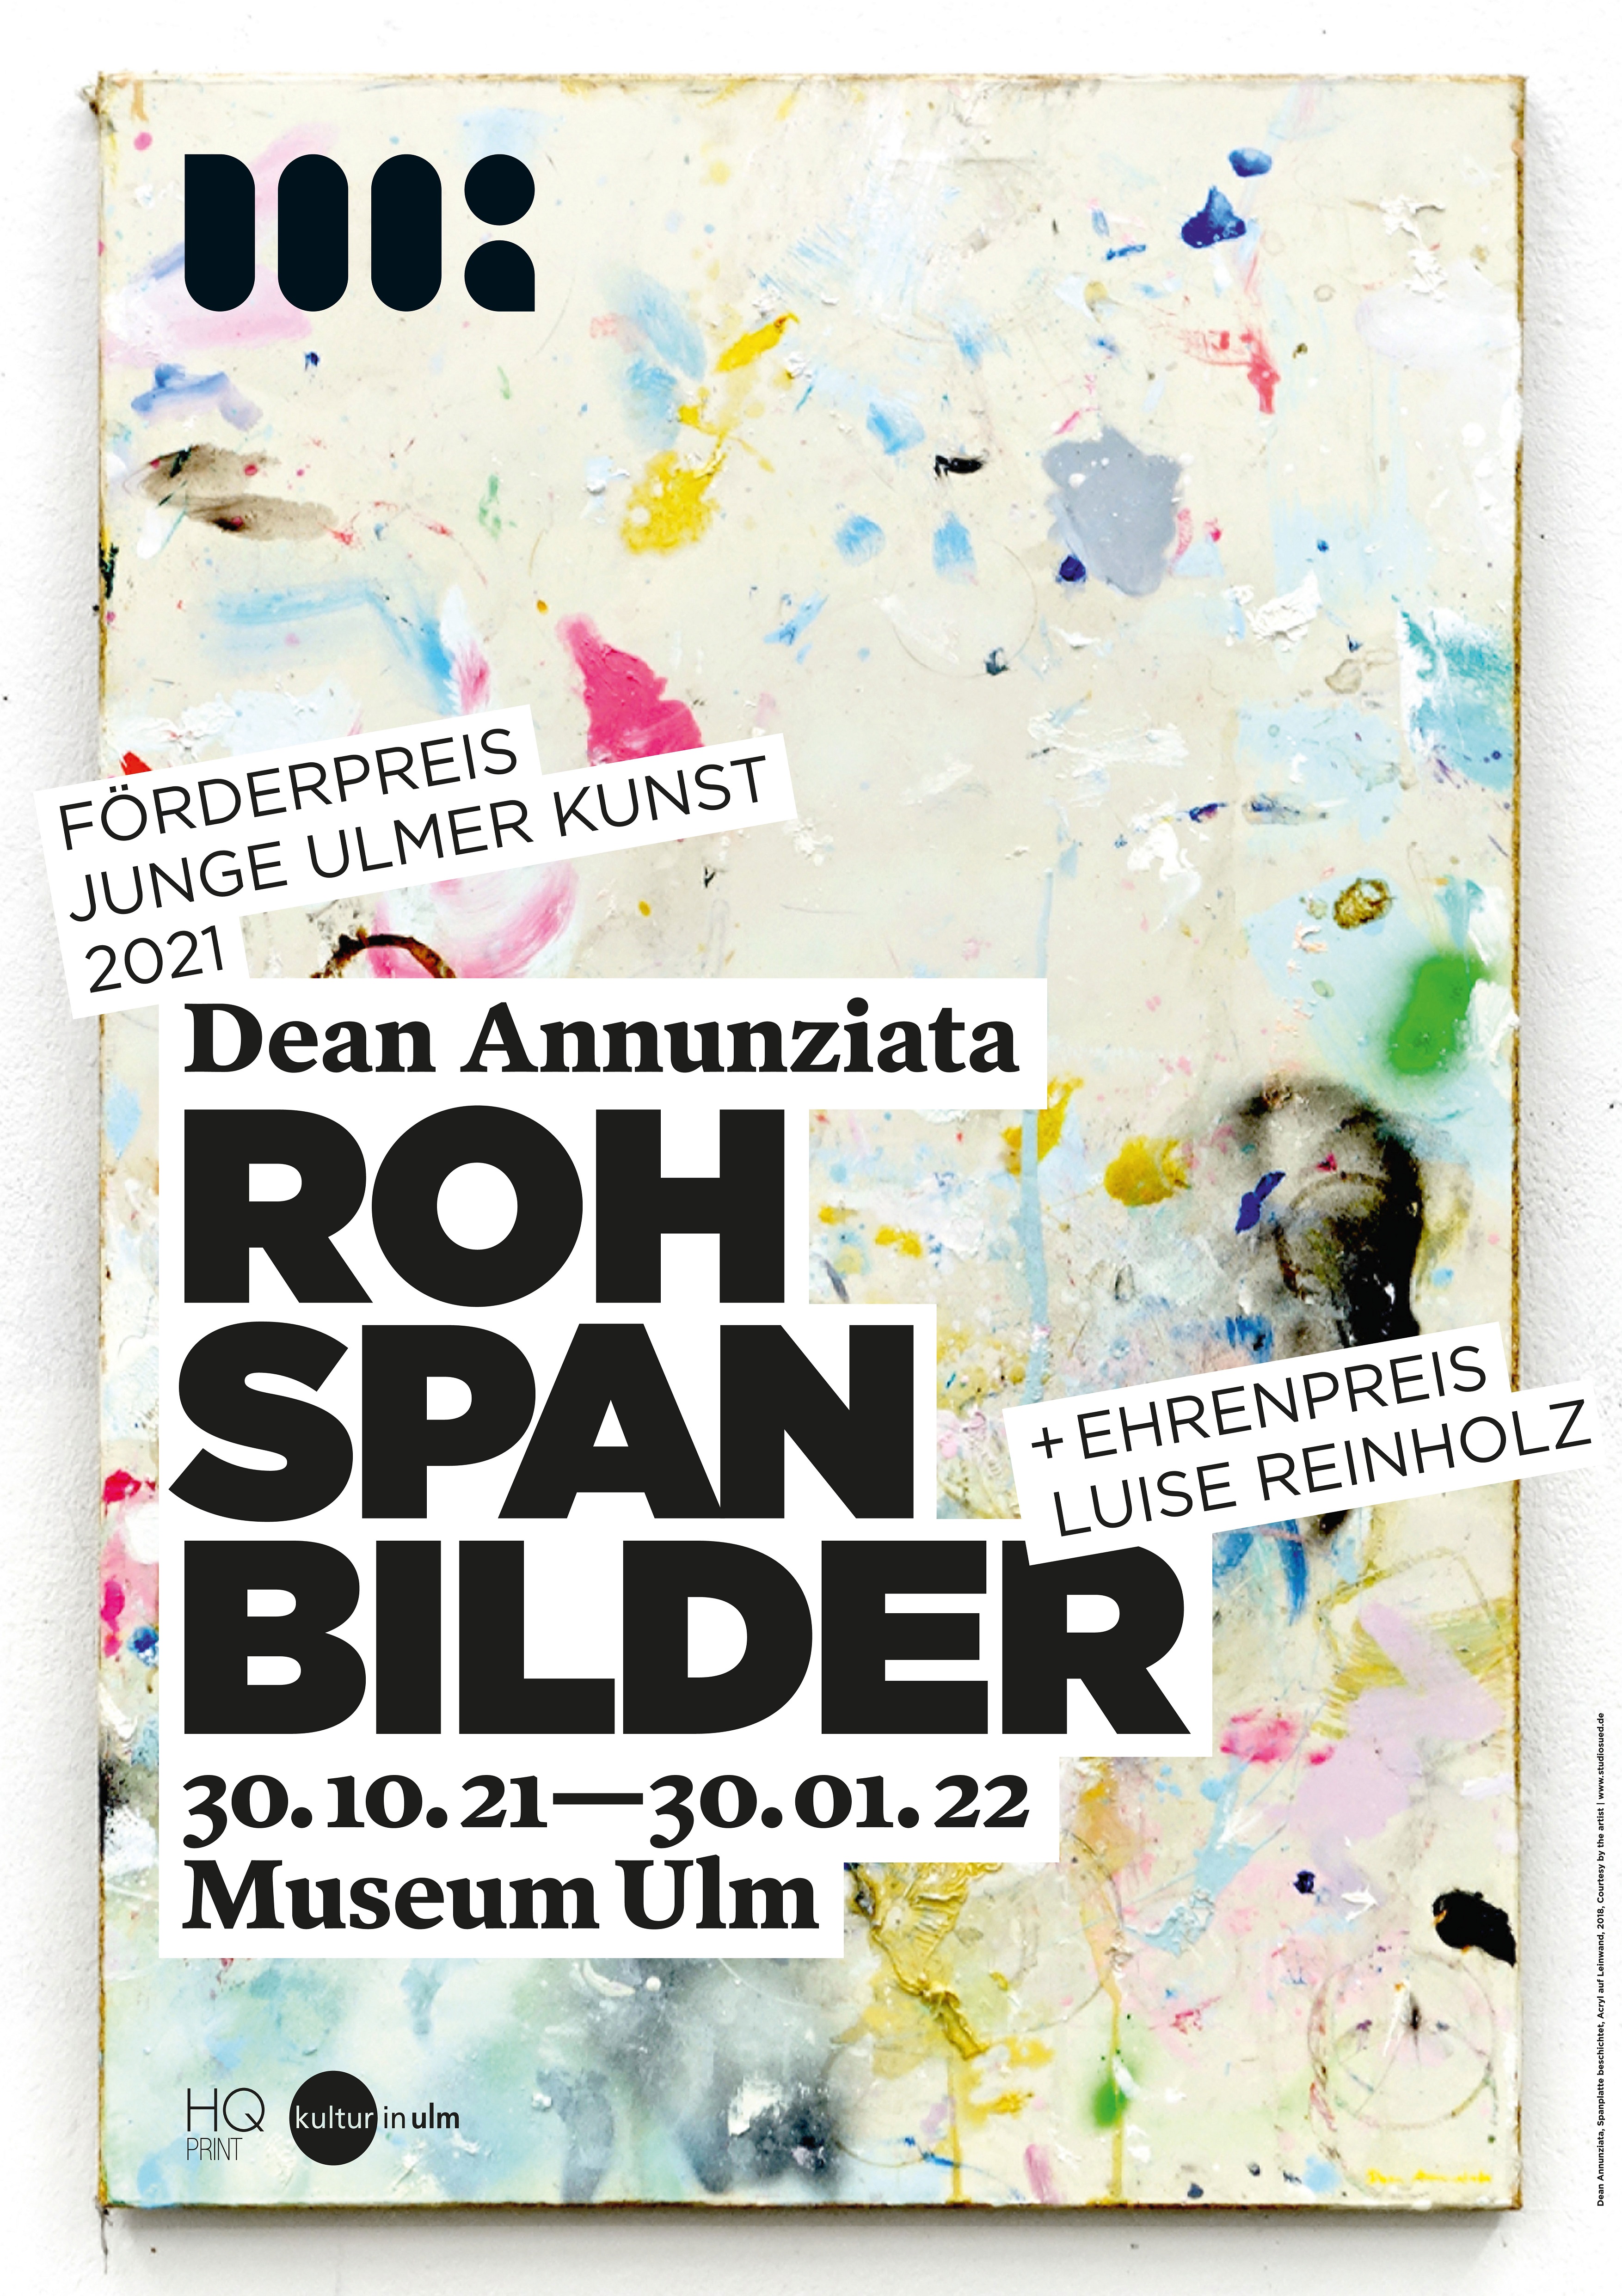 Ausstellung Förderpreis Junge Ulmer Kunst 2021